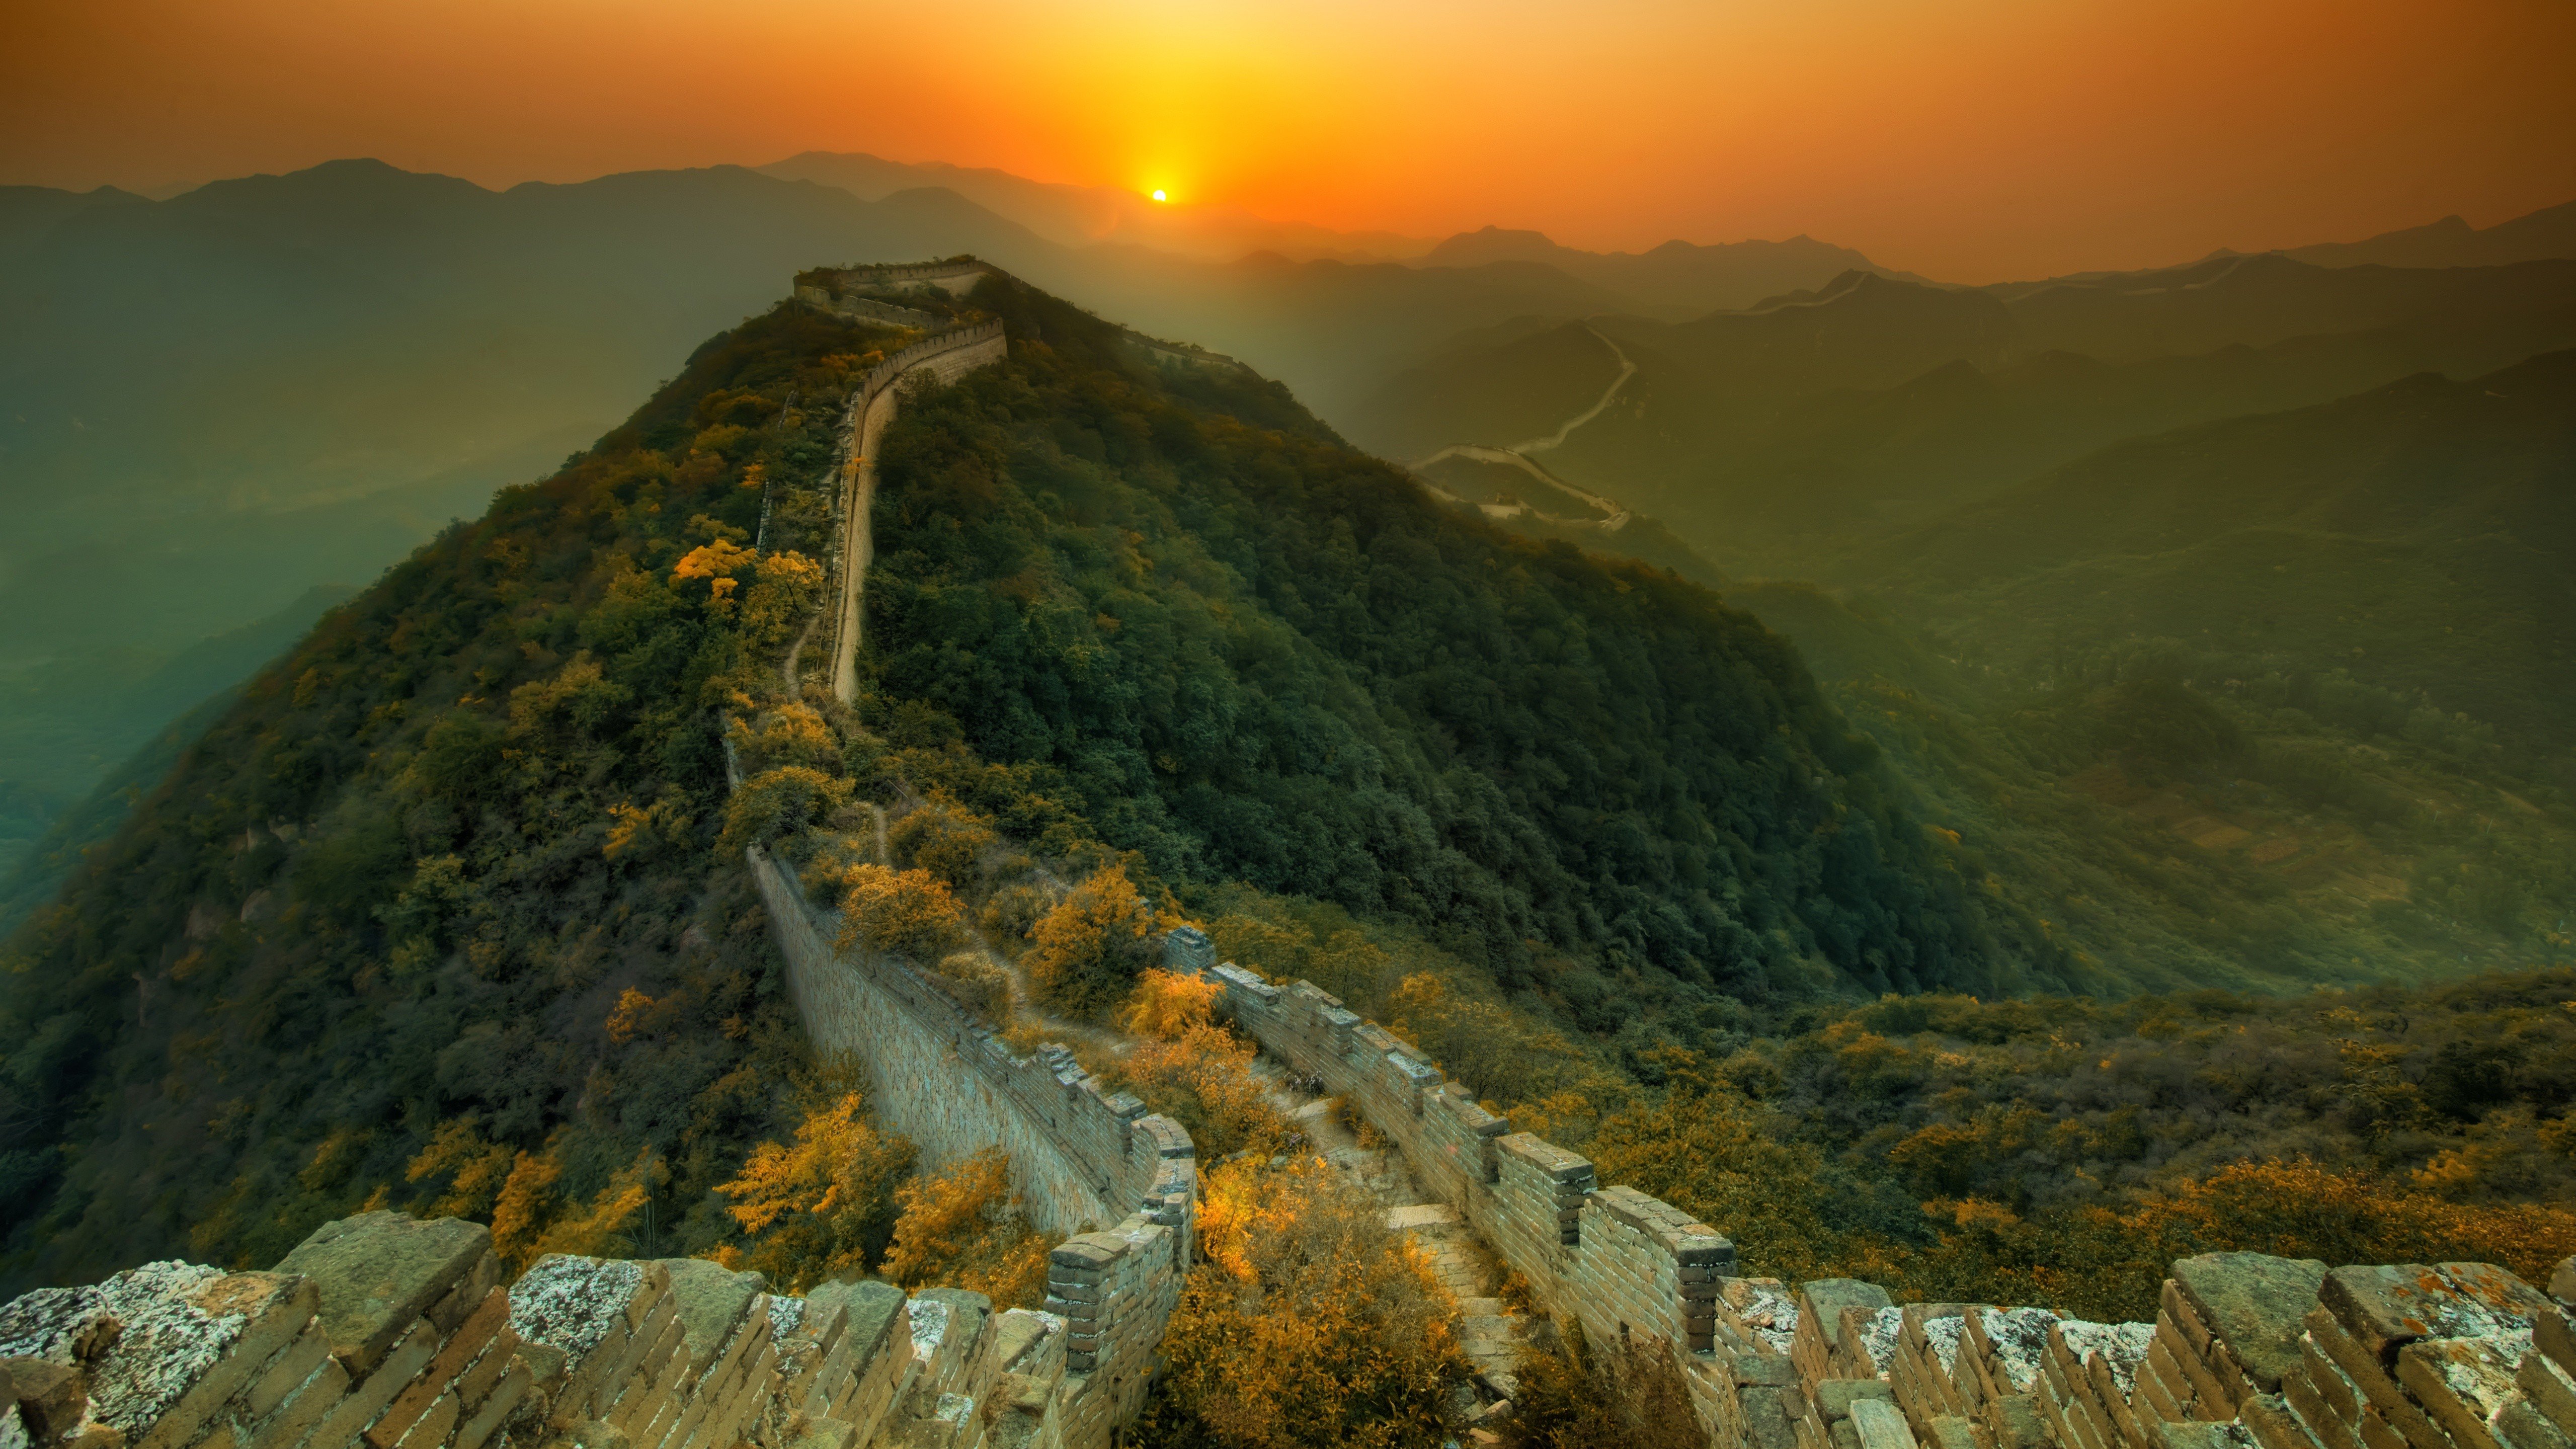 Fondos de pantalla Great Wall of China